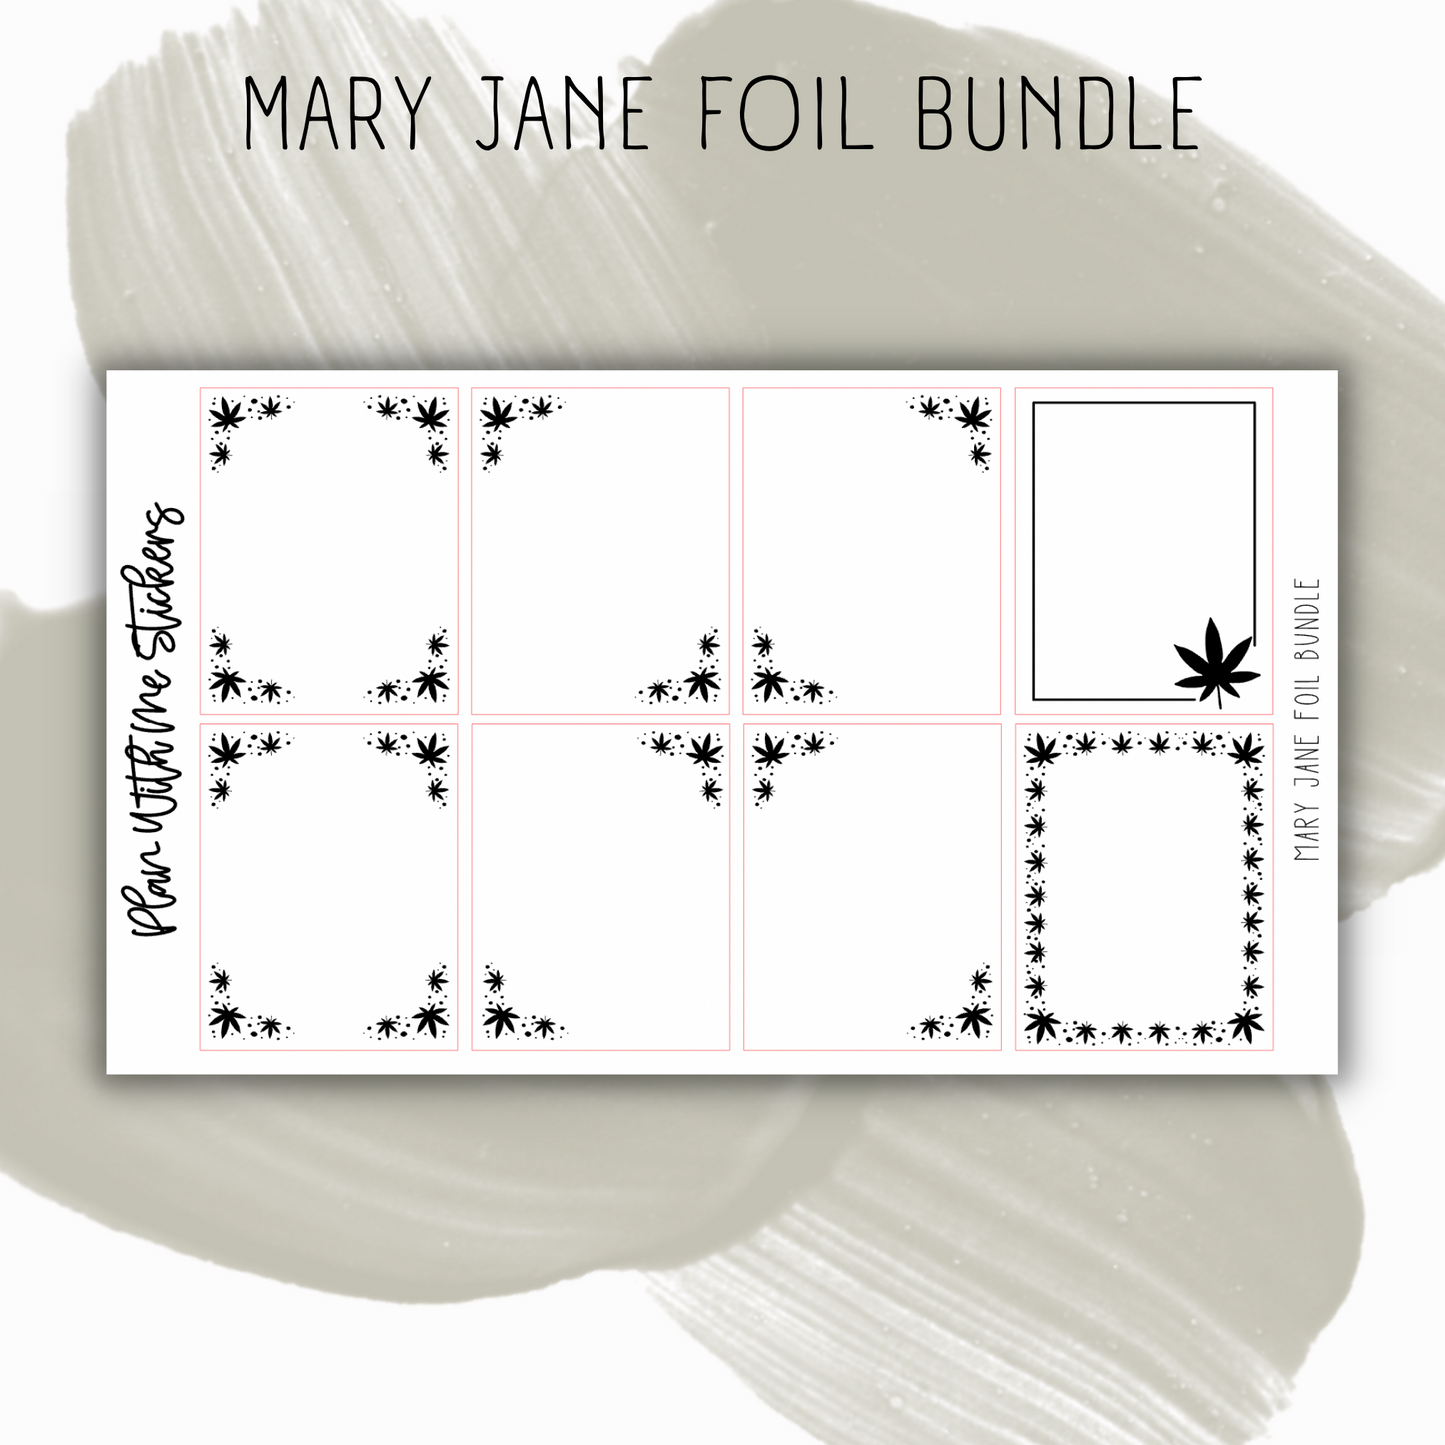 Mary Jane Foil Bundle